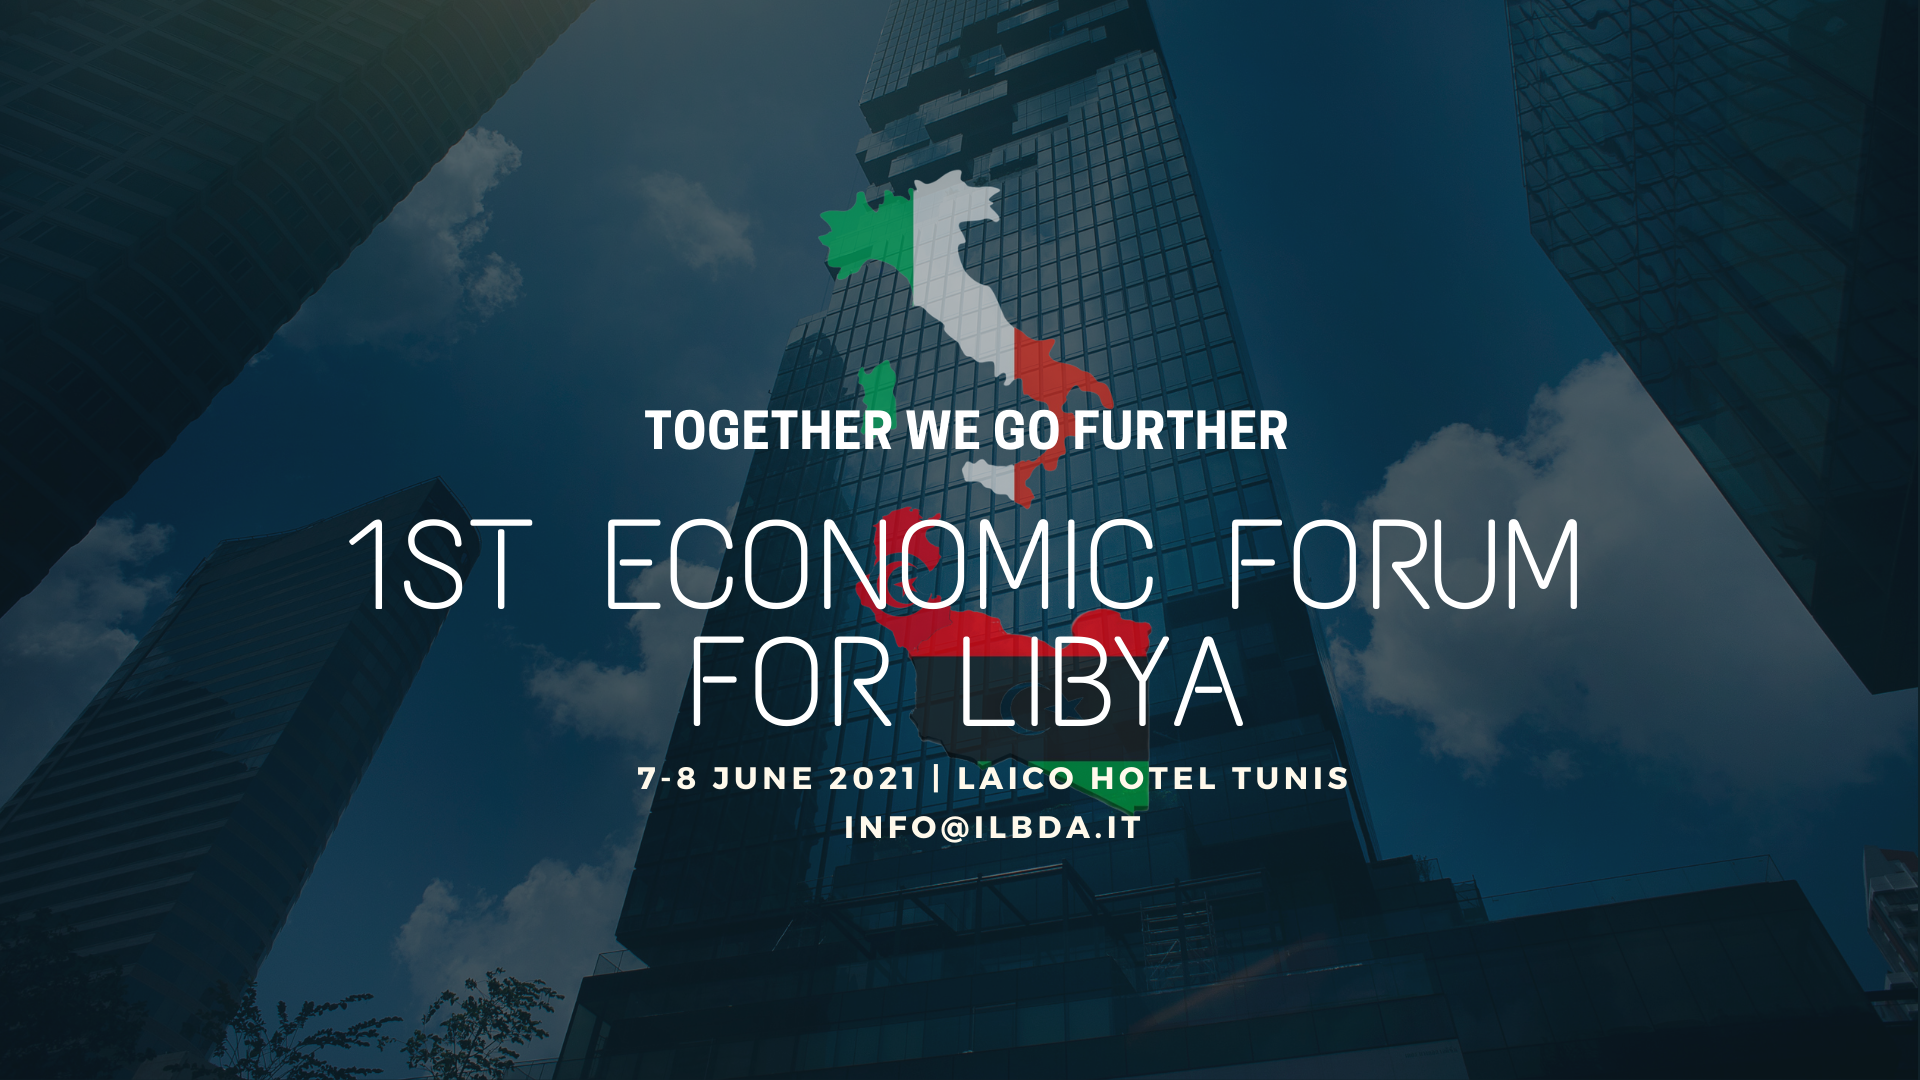 ایل بی ڈی اے: تیونس میں 100 اور 1 جون کو لیبیا کے پہلے اقتصادی فورم میں 7 سے زائد اداروں نے شرکت کی تصدیق کی